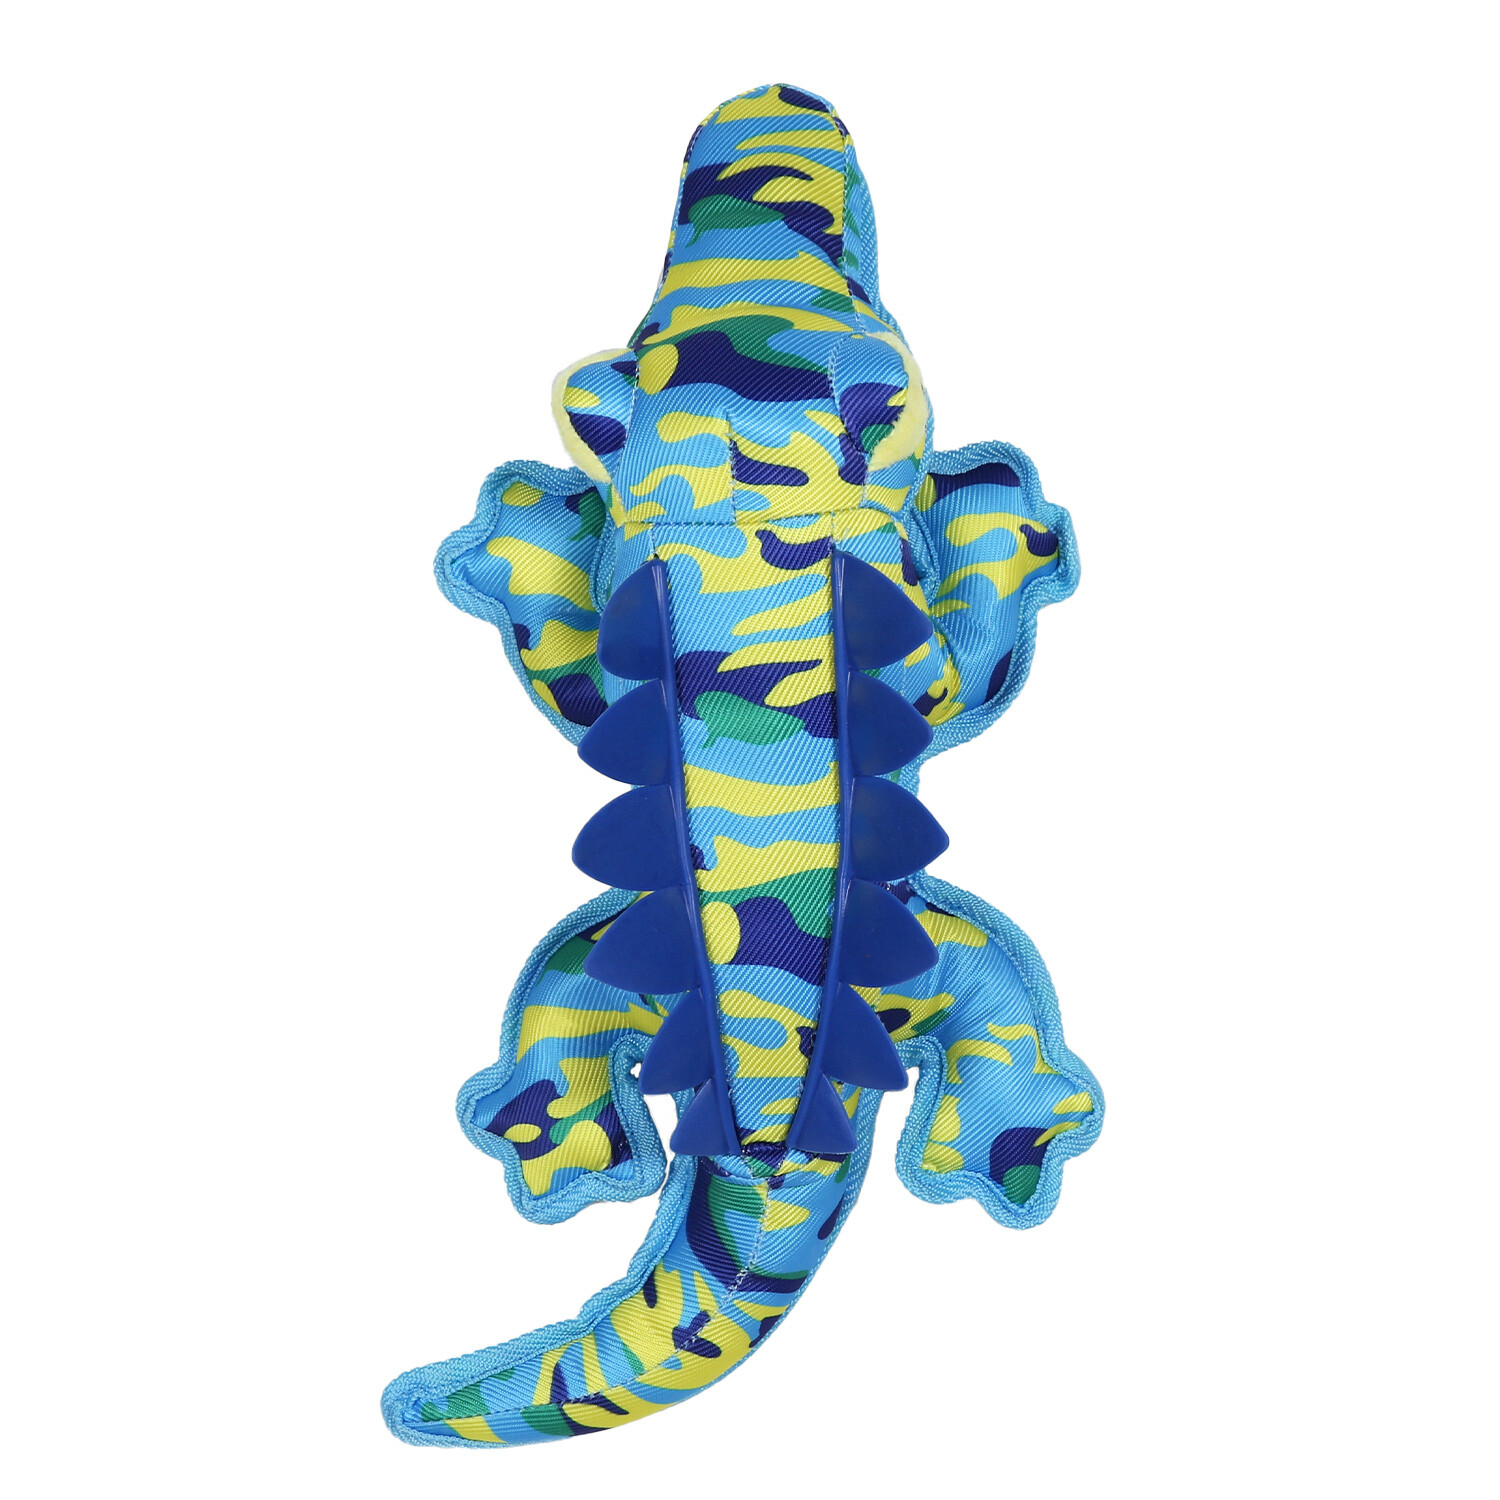 Spiked Blue Crocodile Dog Toy Image